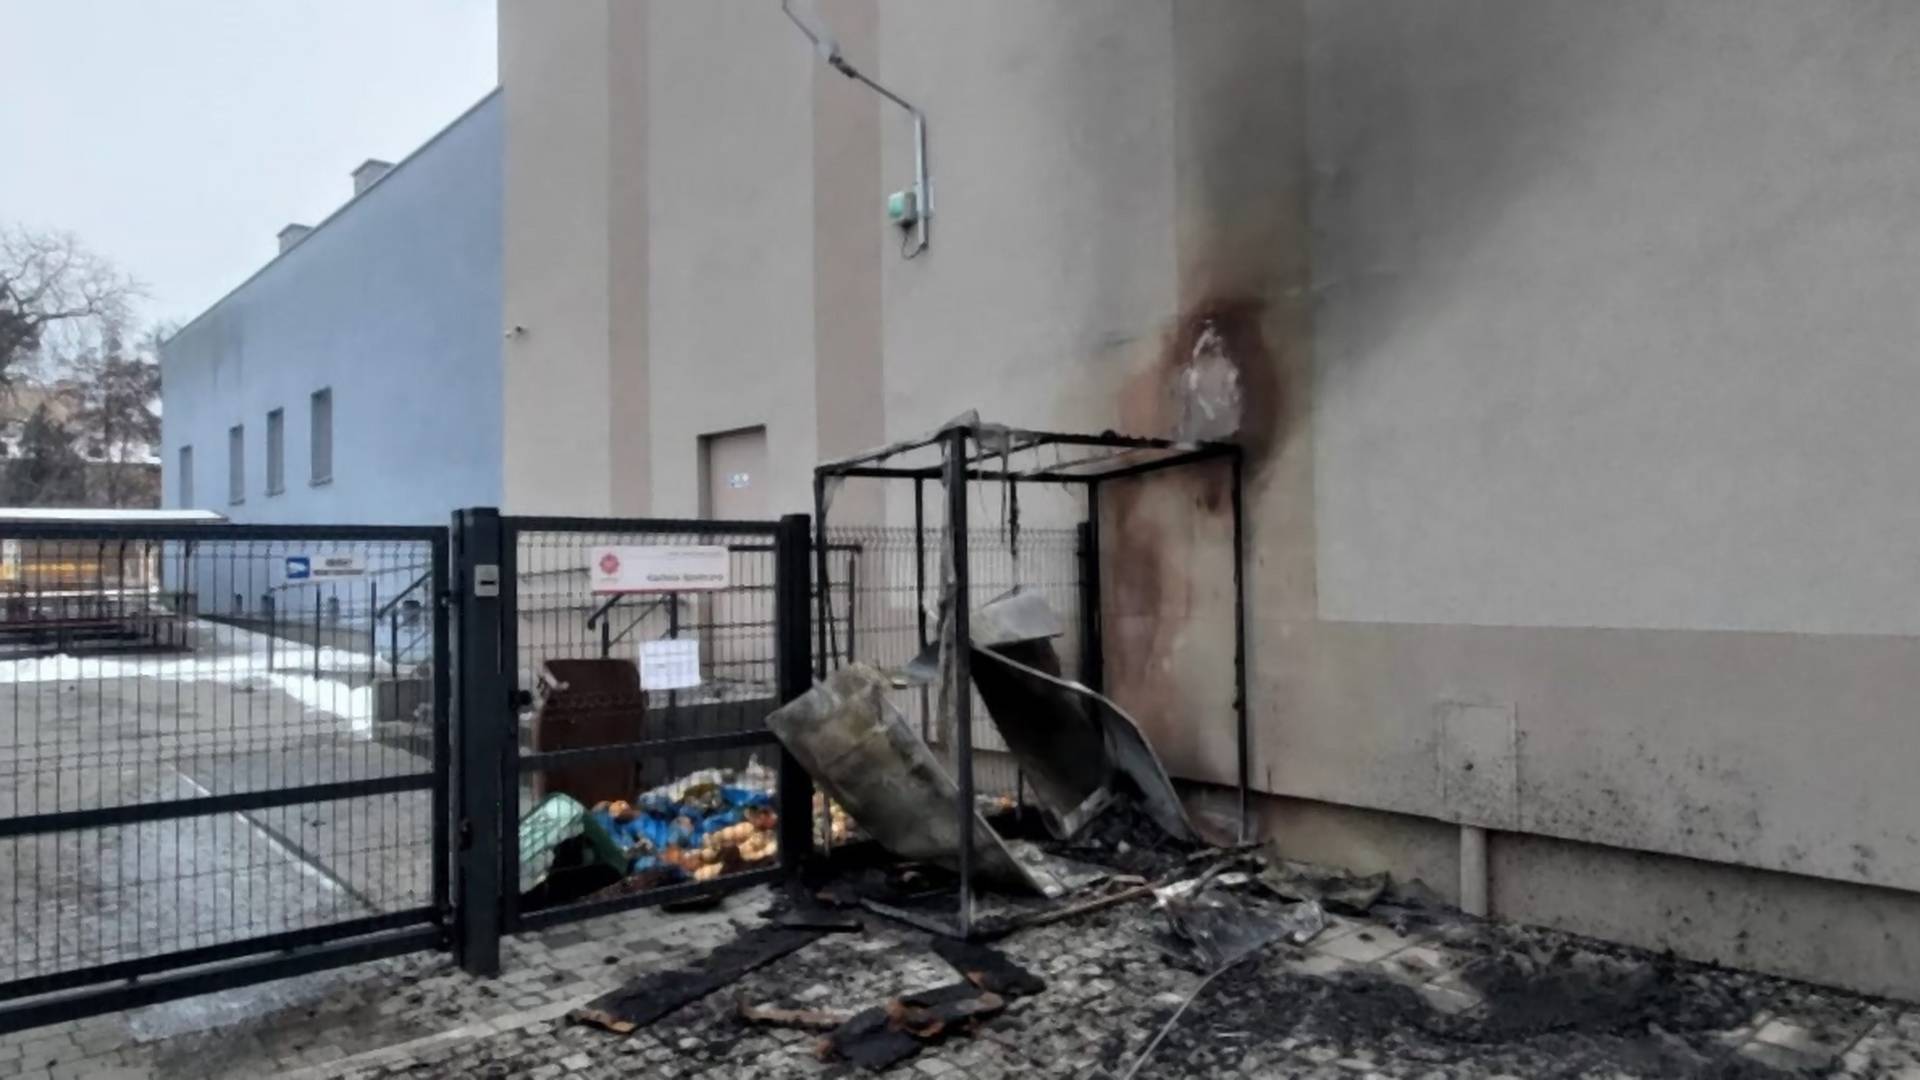 Nieznani sprawcy spalili lodówkę społeczną w Łodzi. "Komuś przeszkadzała"